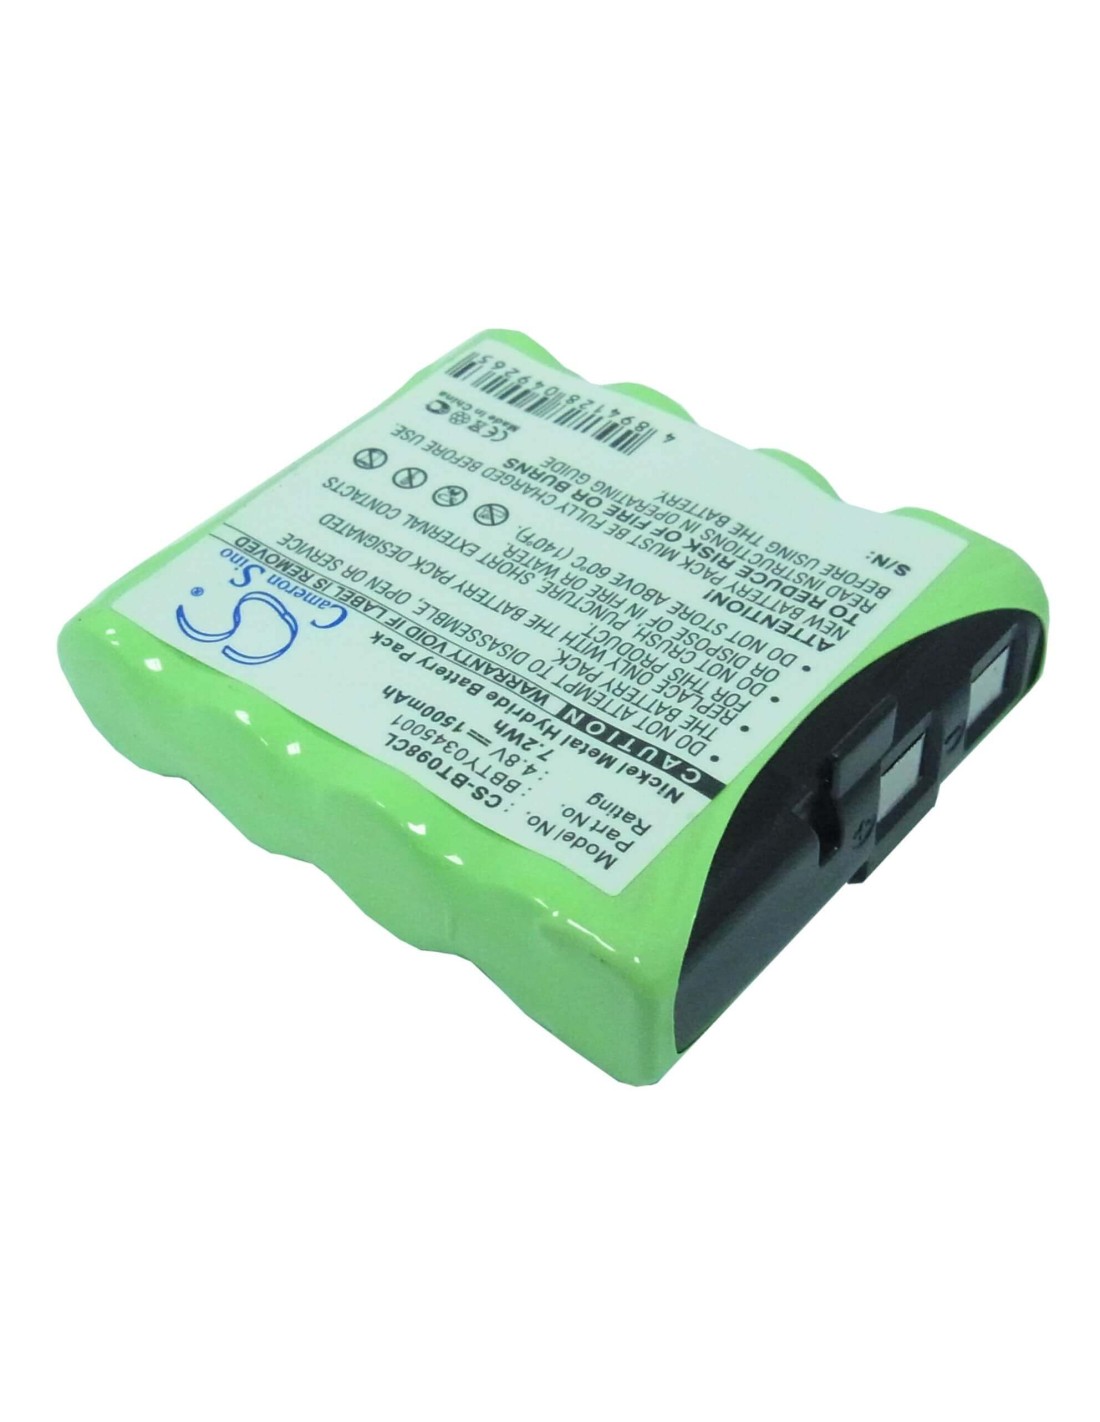 Battery for Toshiba, Bt098, Bt-098 4.8V, 1500mAh - 7.20Wh